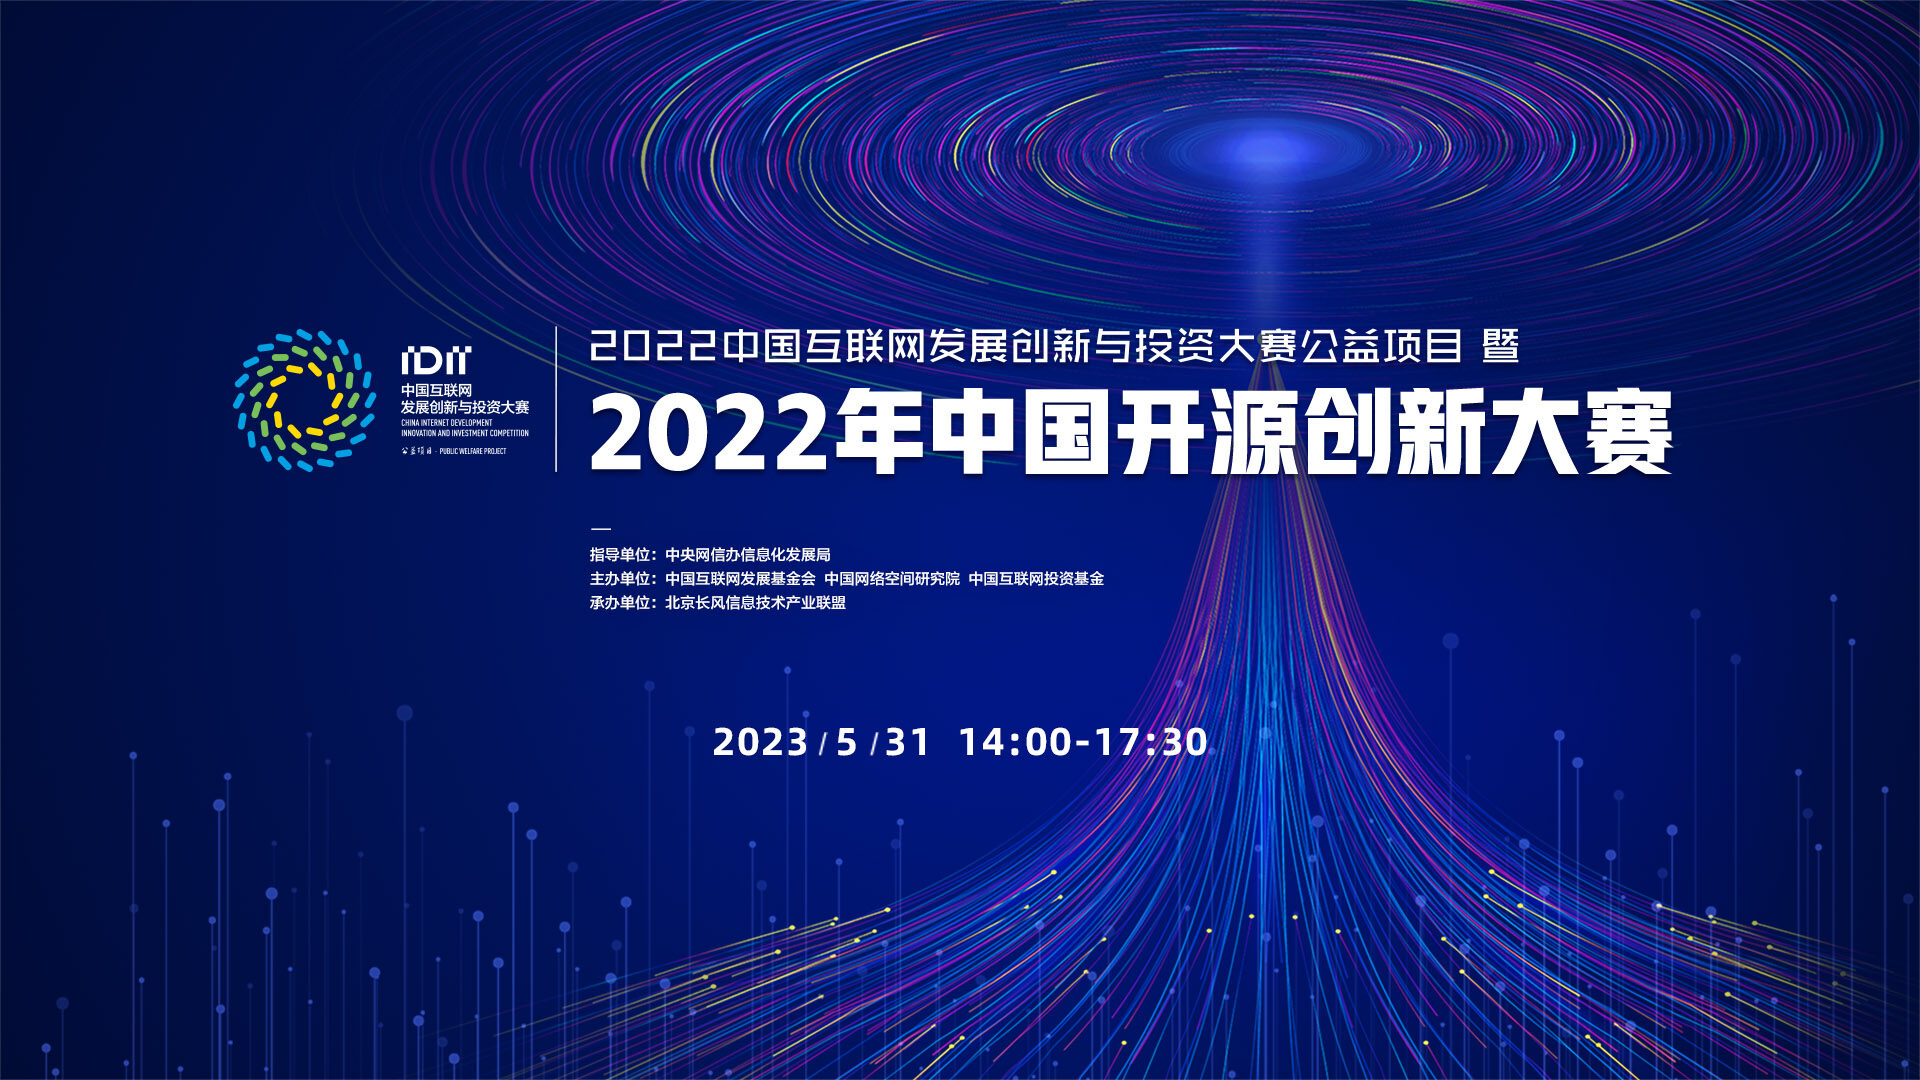 2022年中国开源创新大赛总结发布活动